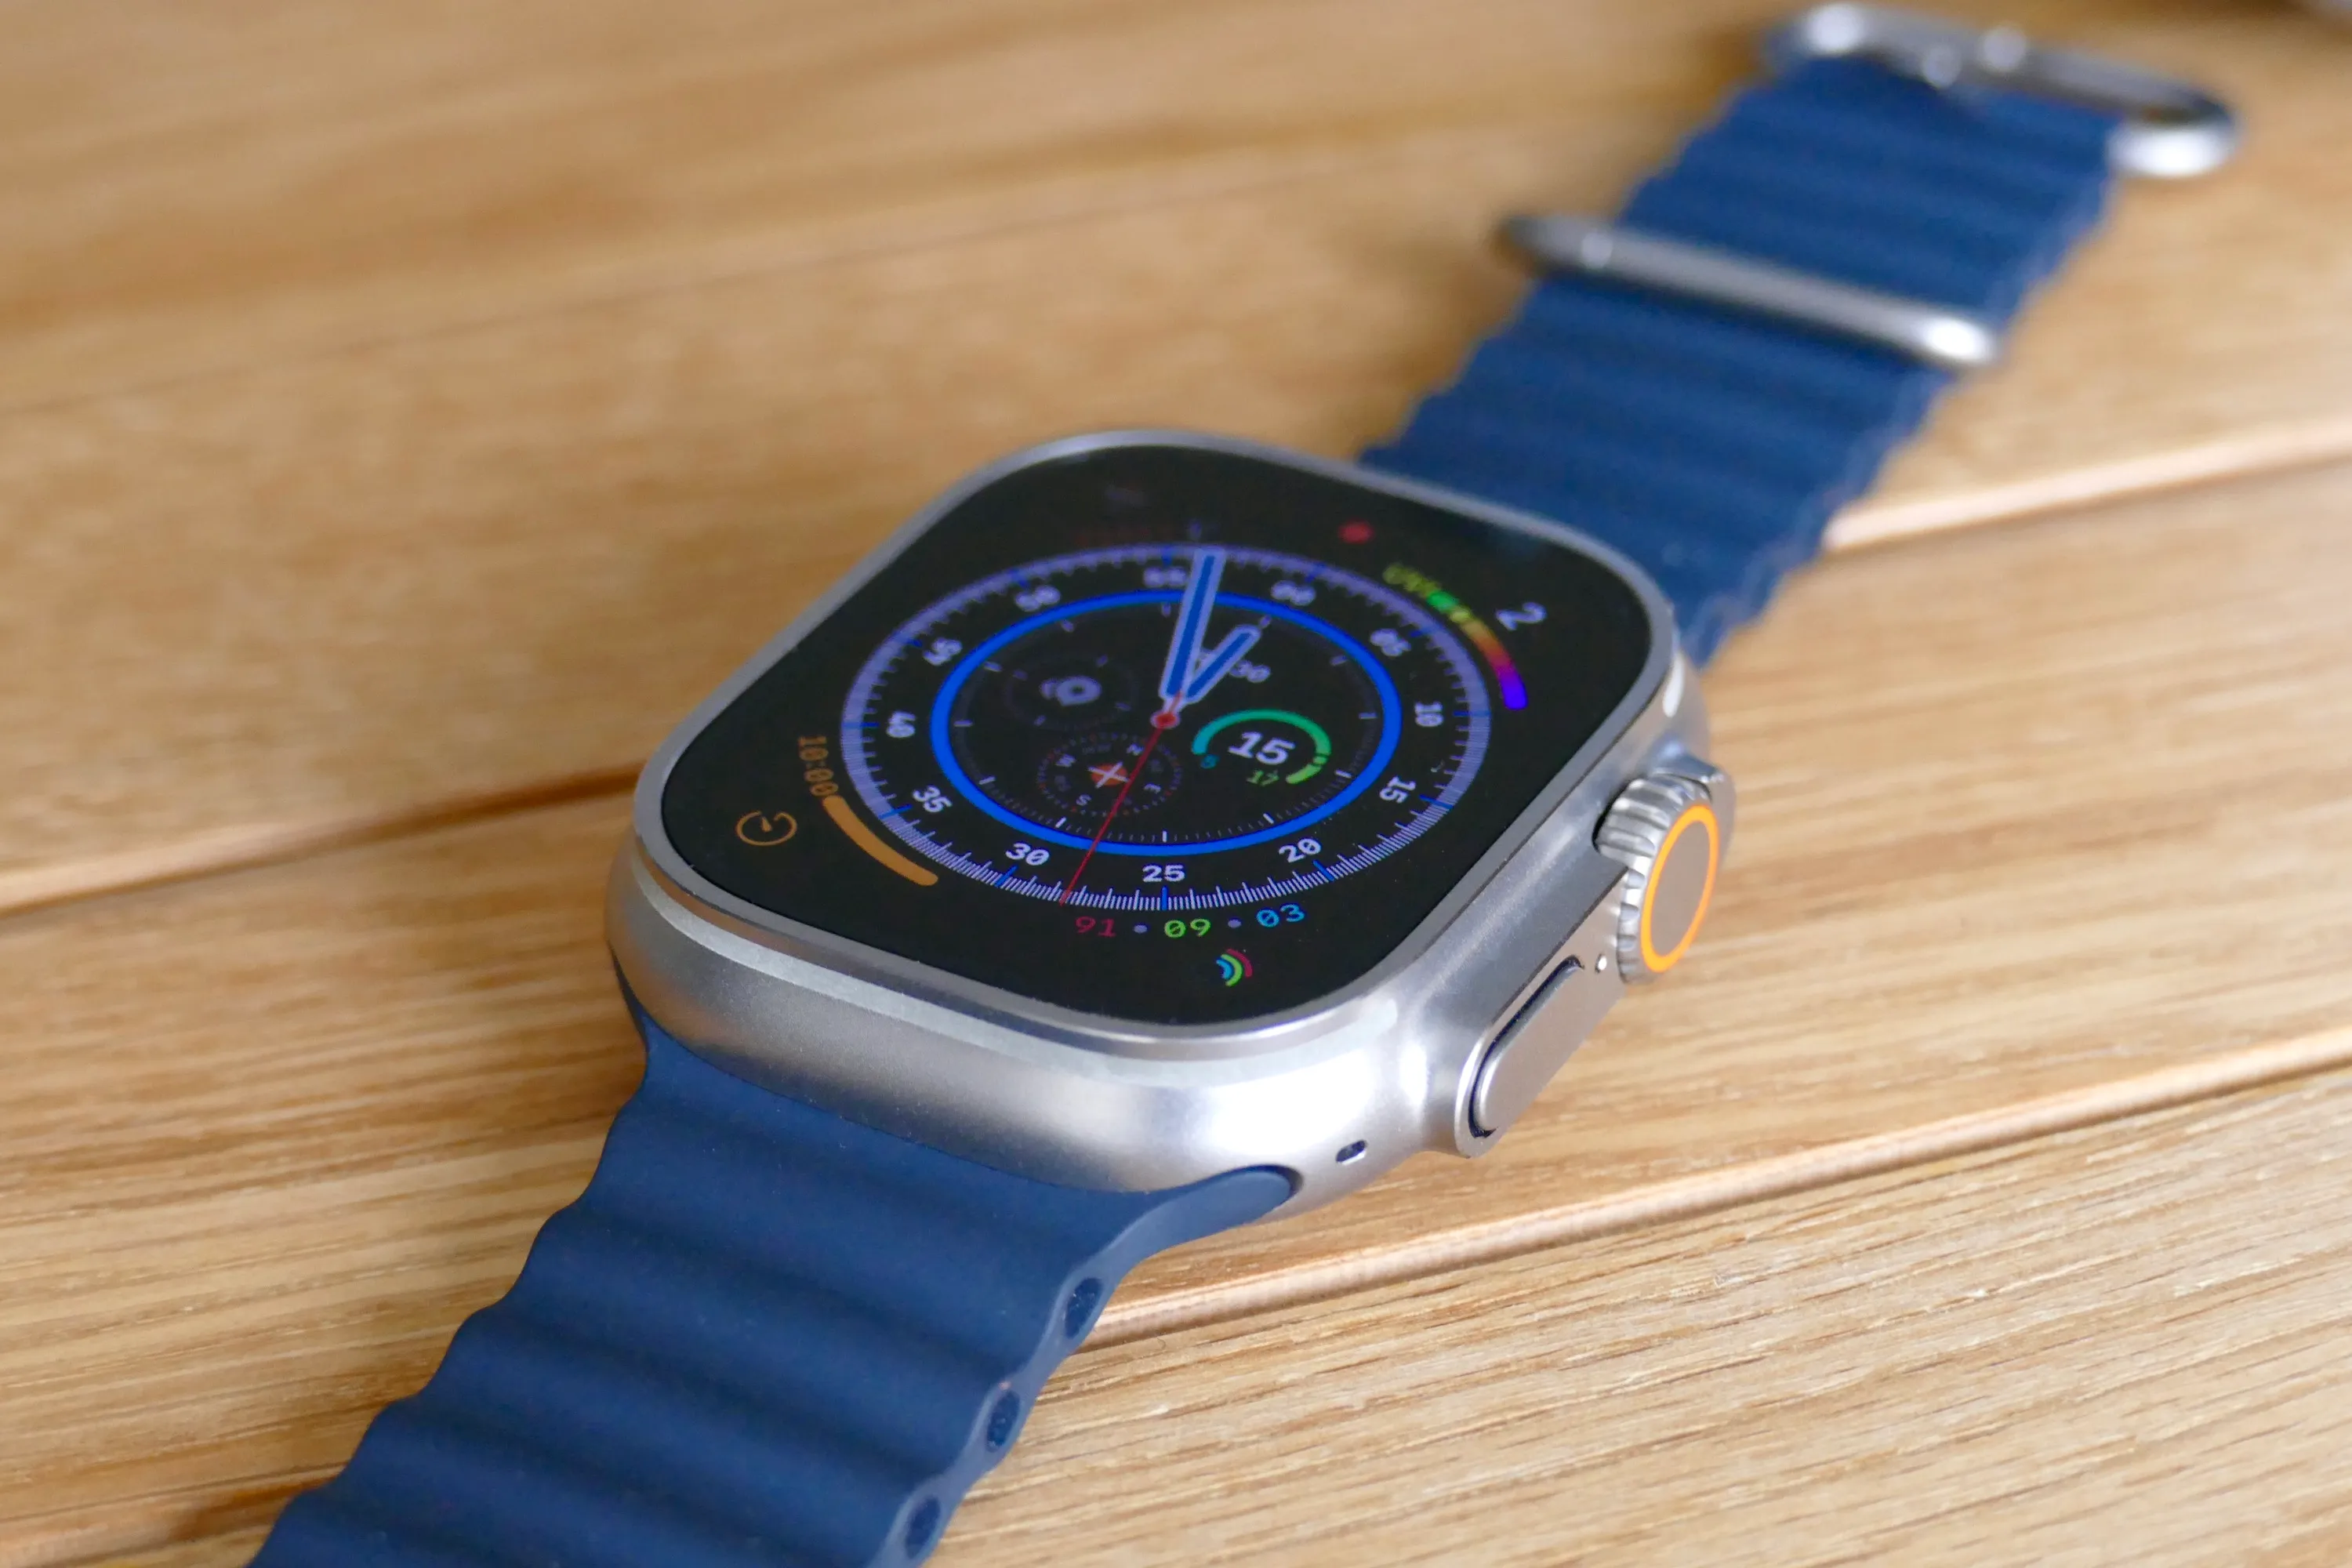 Apple-Watch-Ultra-01